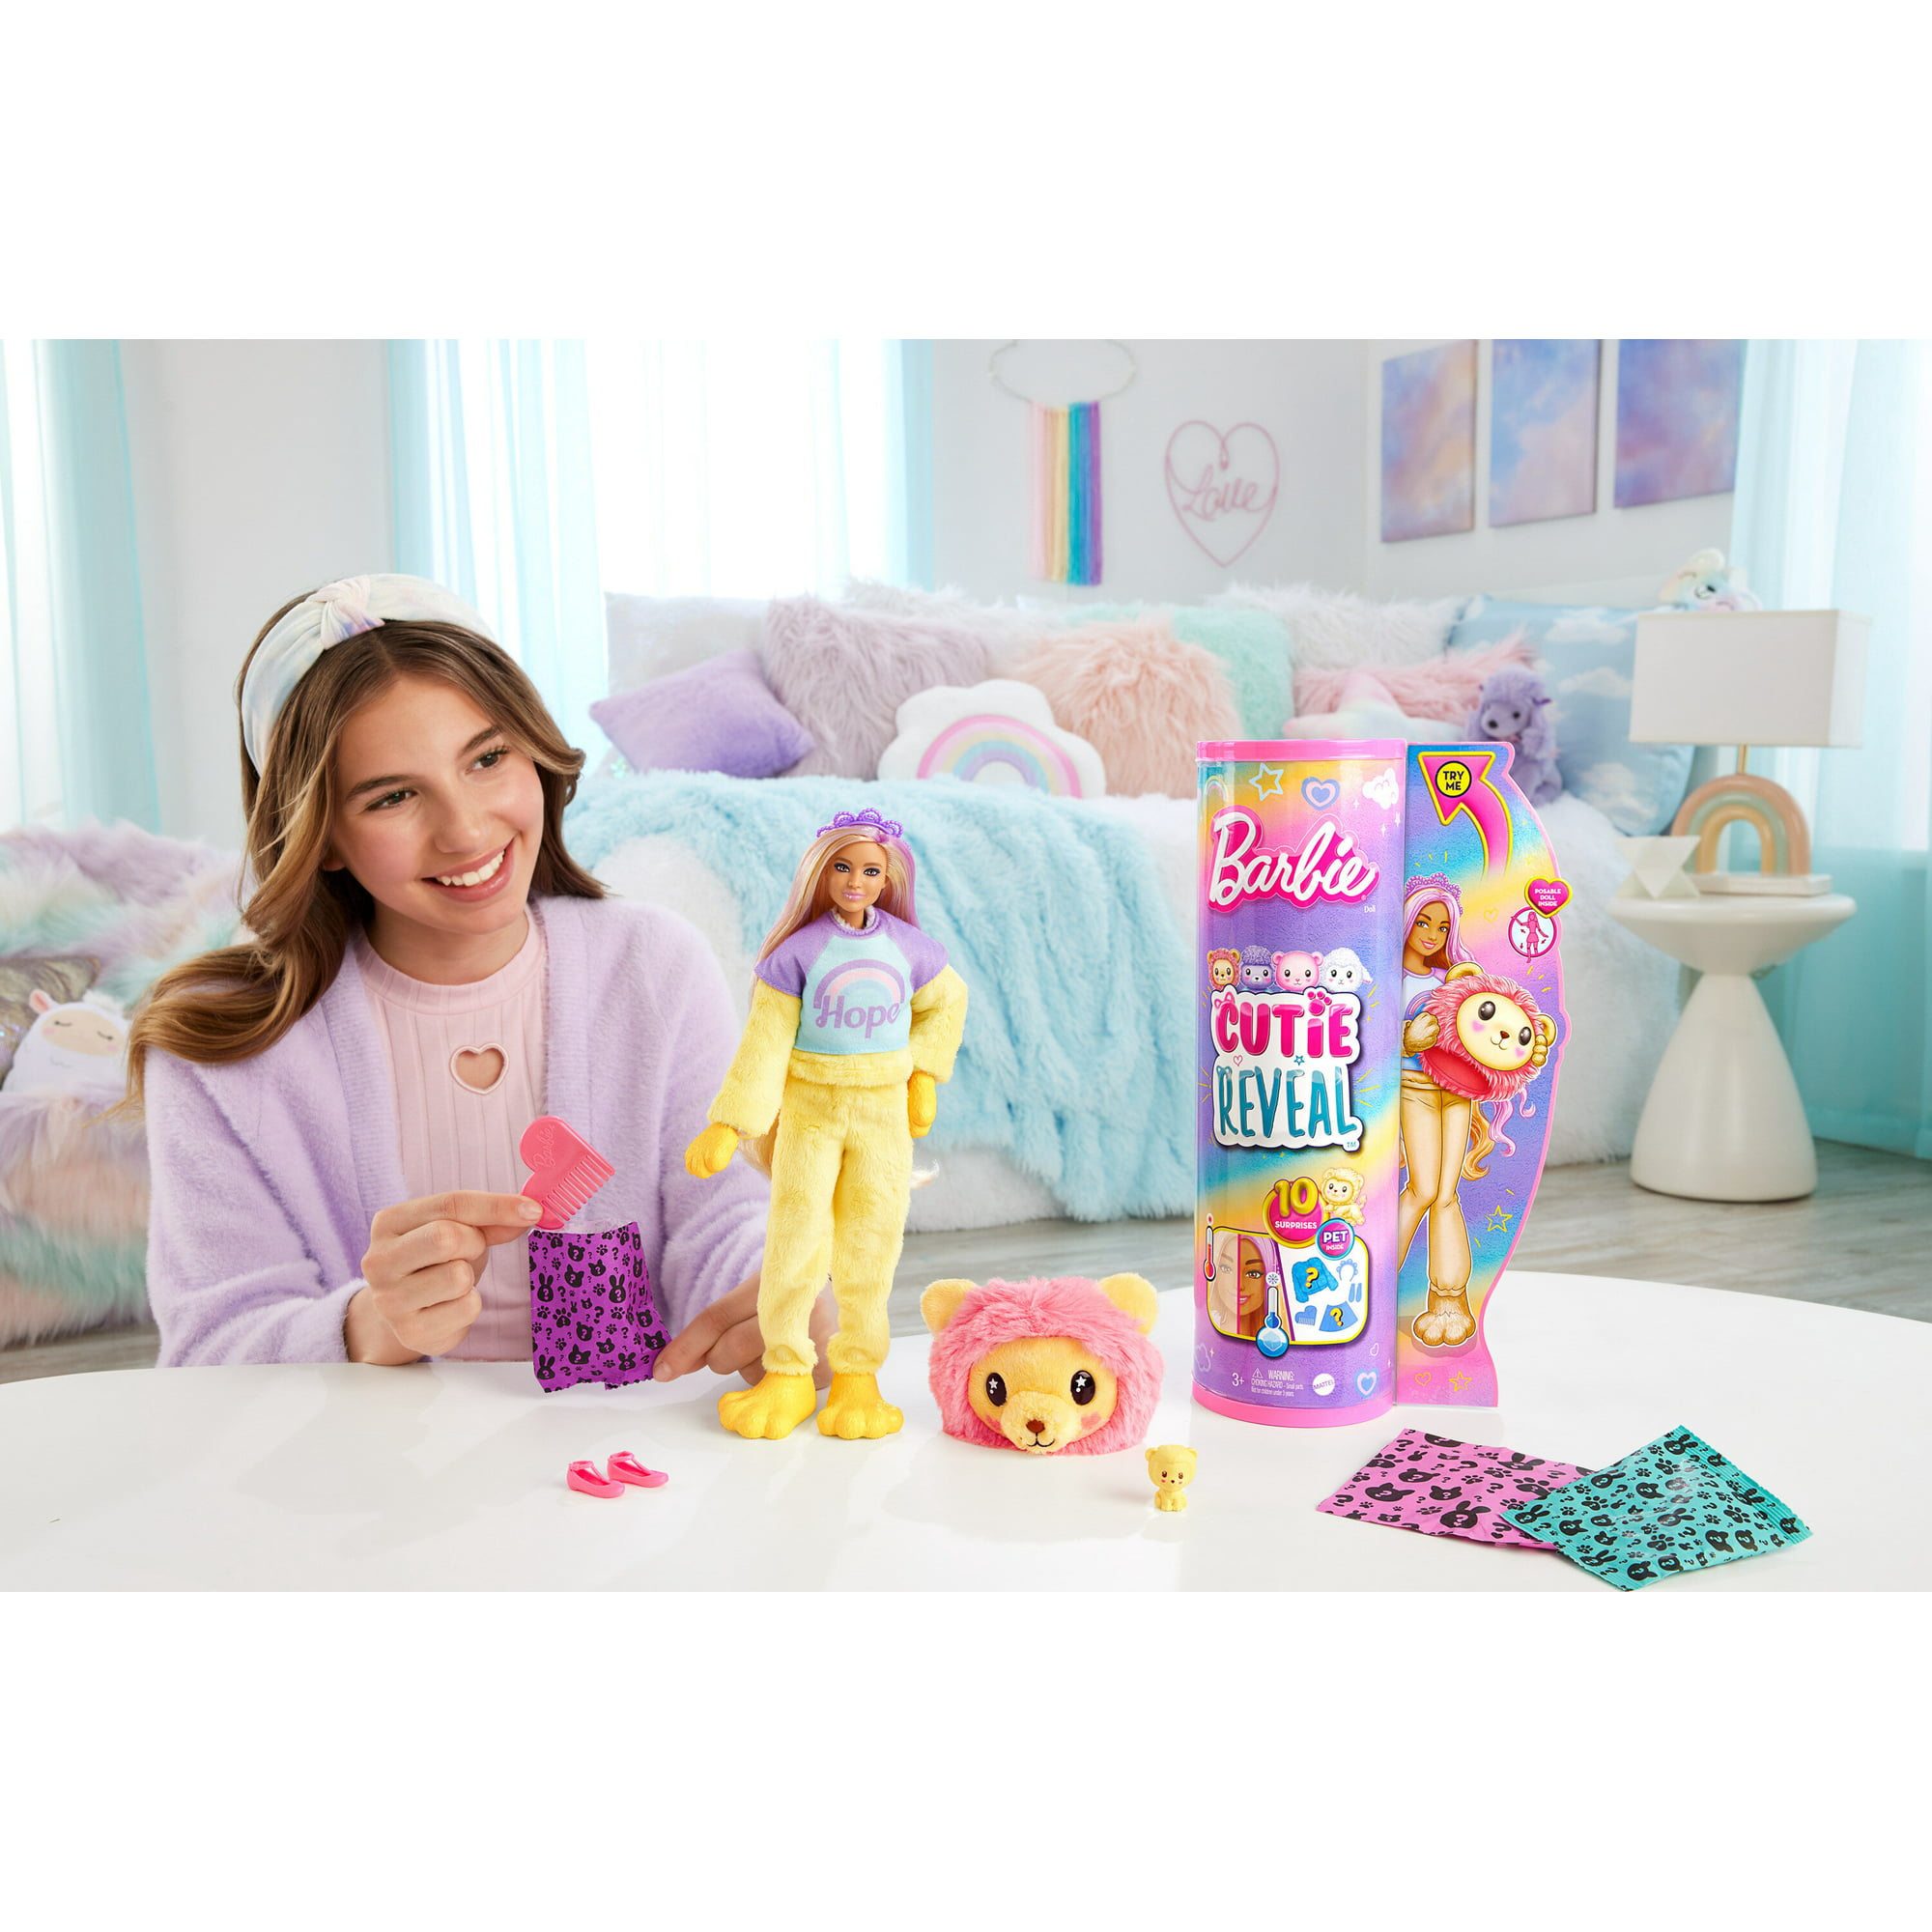 Barbie Cutie Reveal Doll Accessories, Cute Tees “Hope” Tee, Purple-Streaked Blonde Hair, Eyes - Walmart.com